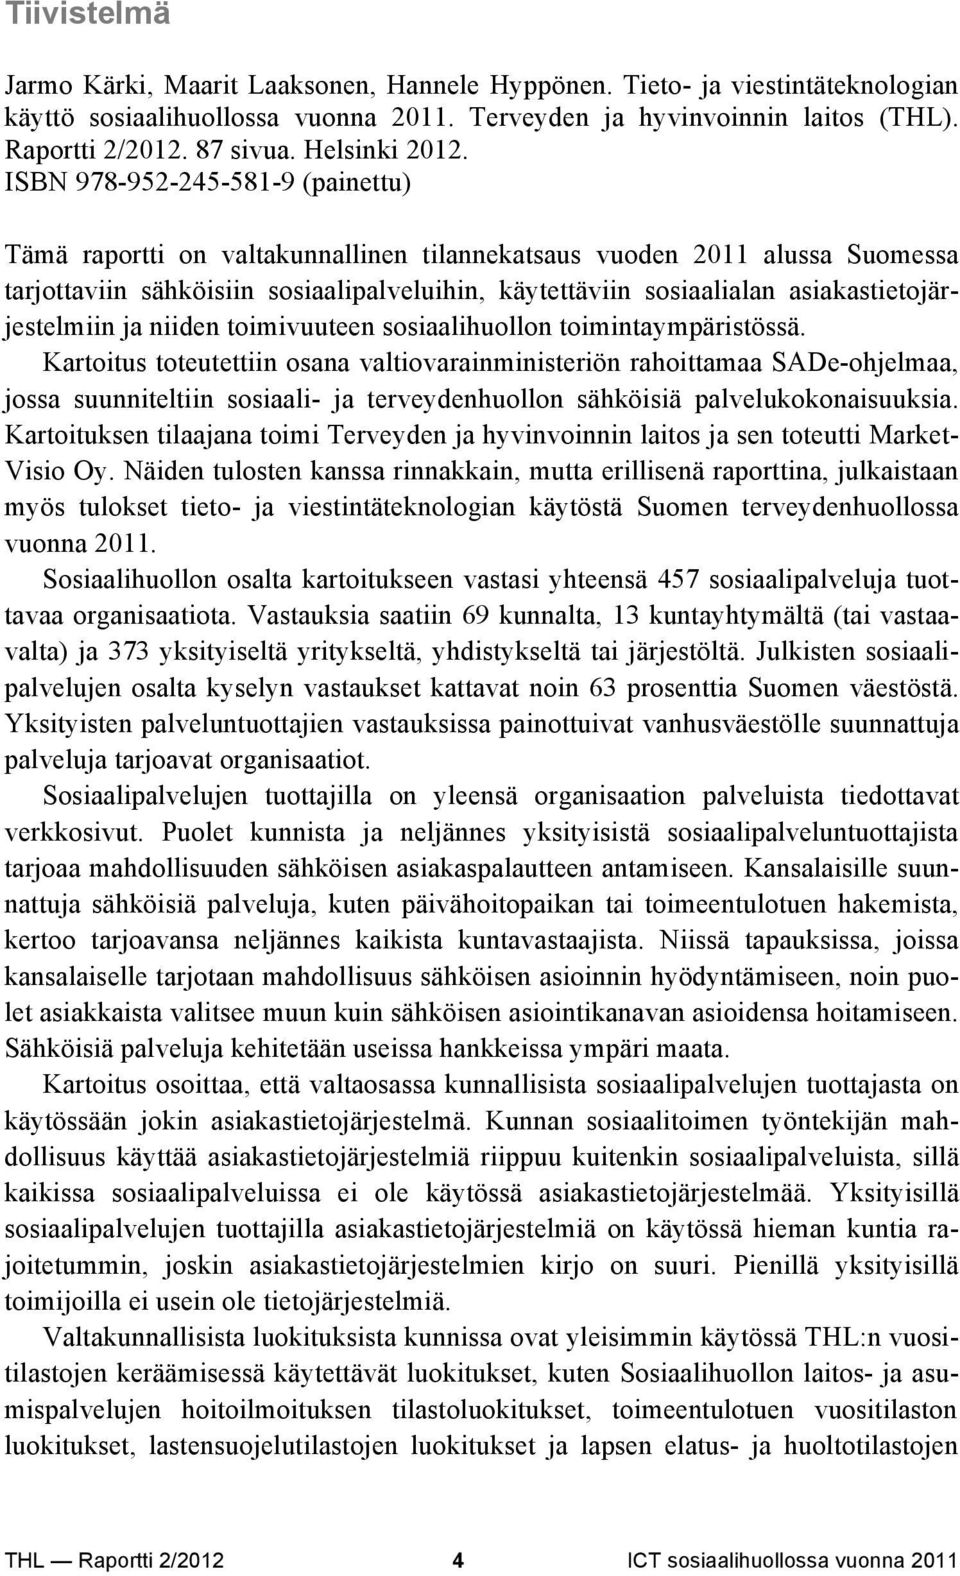 ISBN 978-952-245-581-9 (painettu) Tämä raportti on valtakunnallinen tilannekatsaus vuoden 2011 alussa Suomessa tarjottaviin sähköisiin sosiaalipalveluihin, käytettäviin sosiaalialan